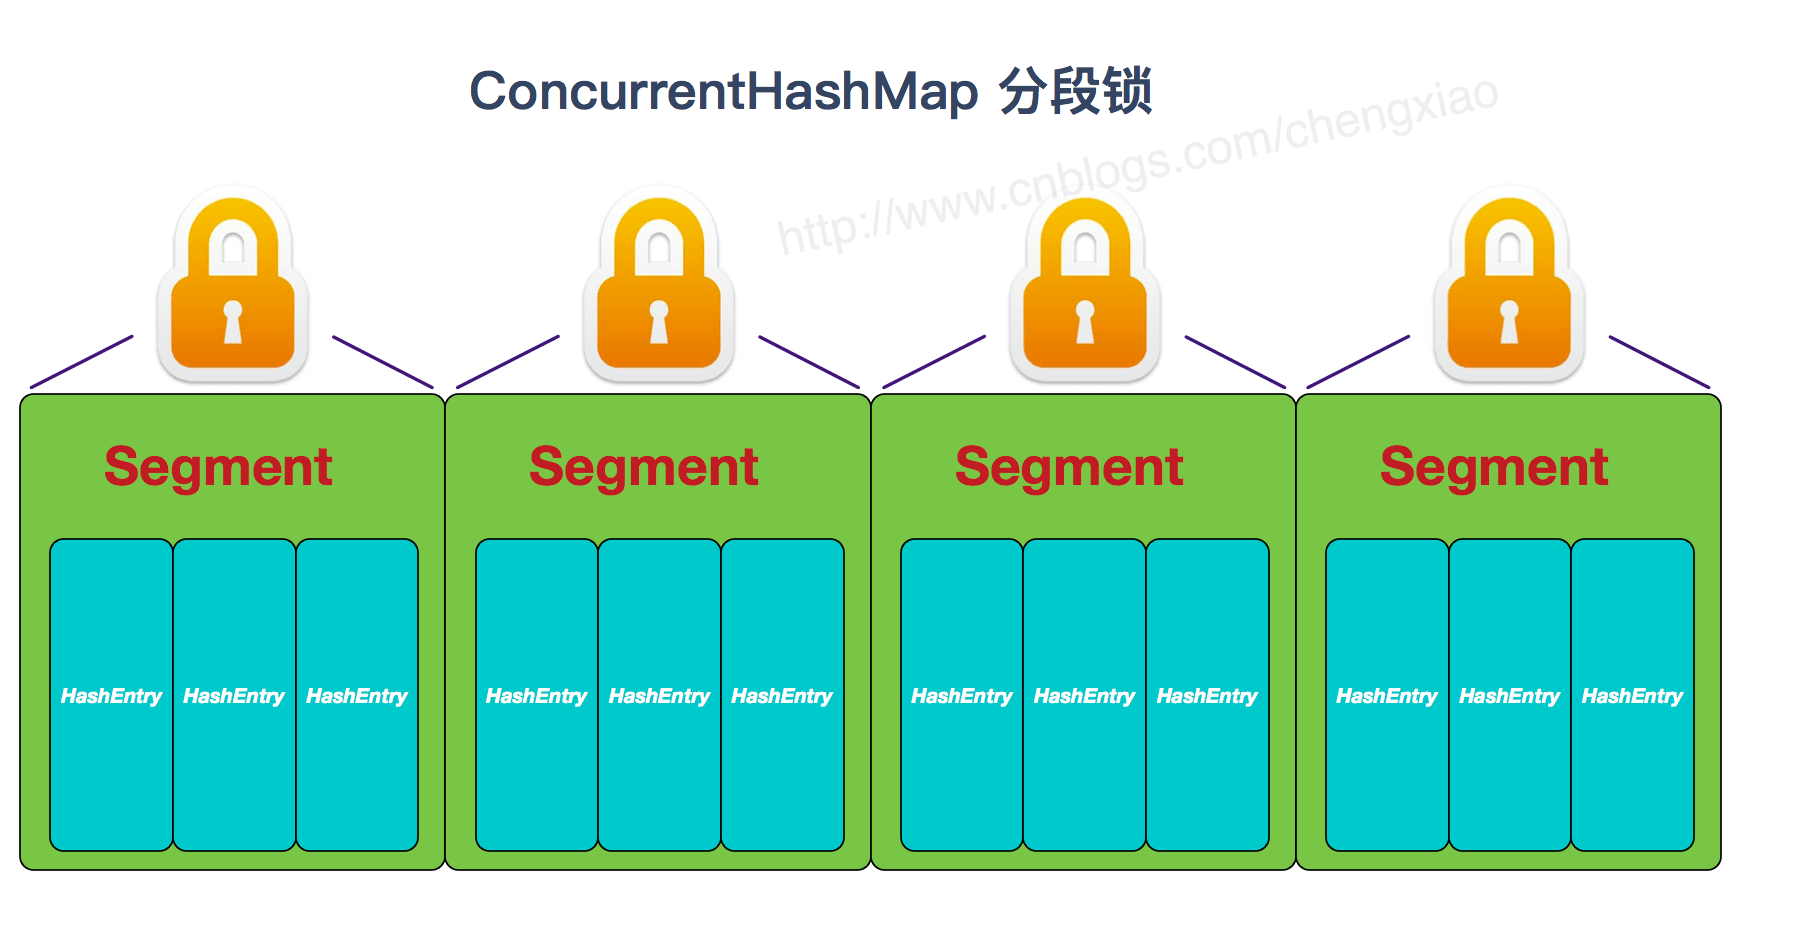 ConcurrentHashMap segment lock